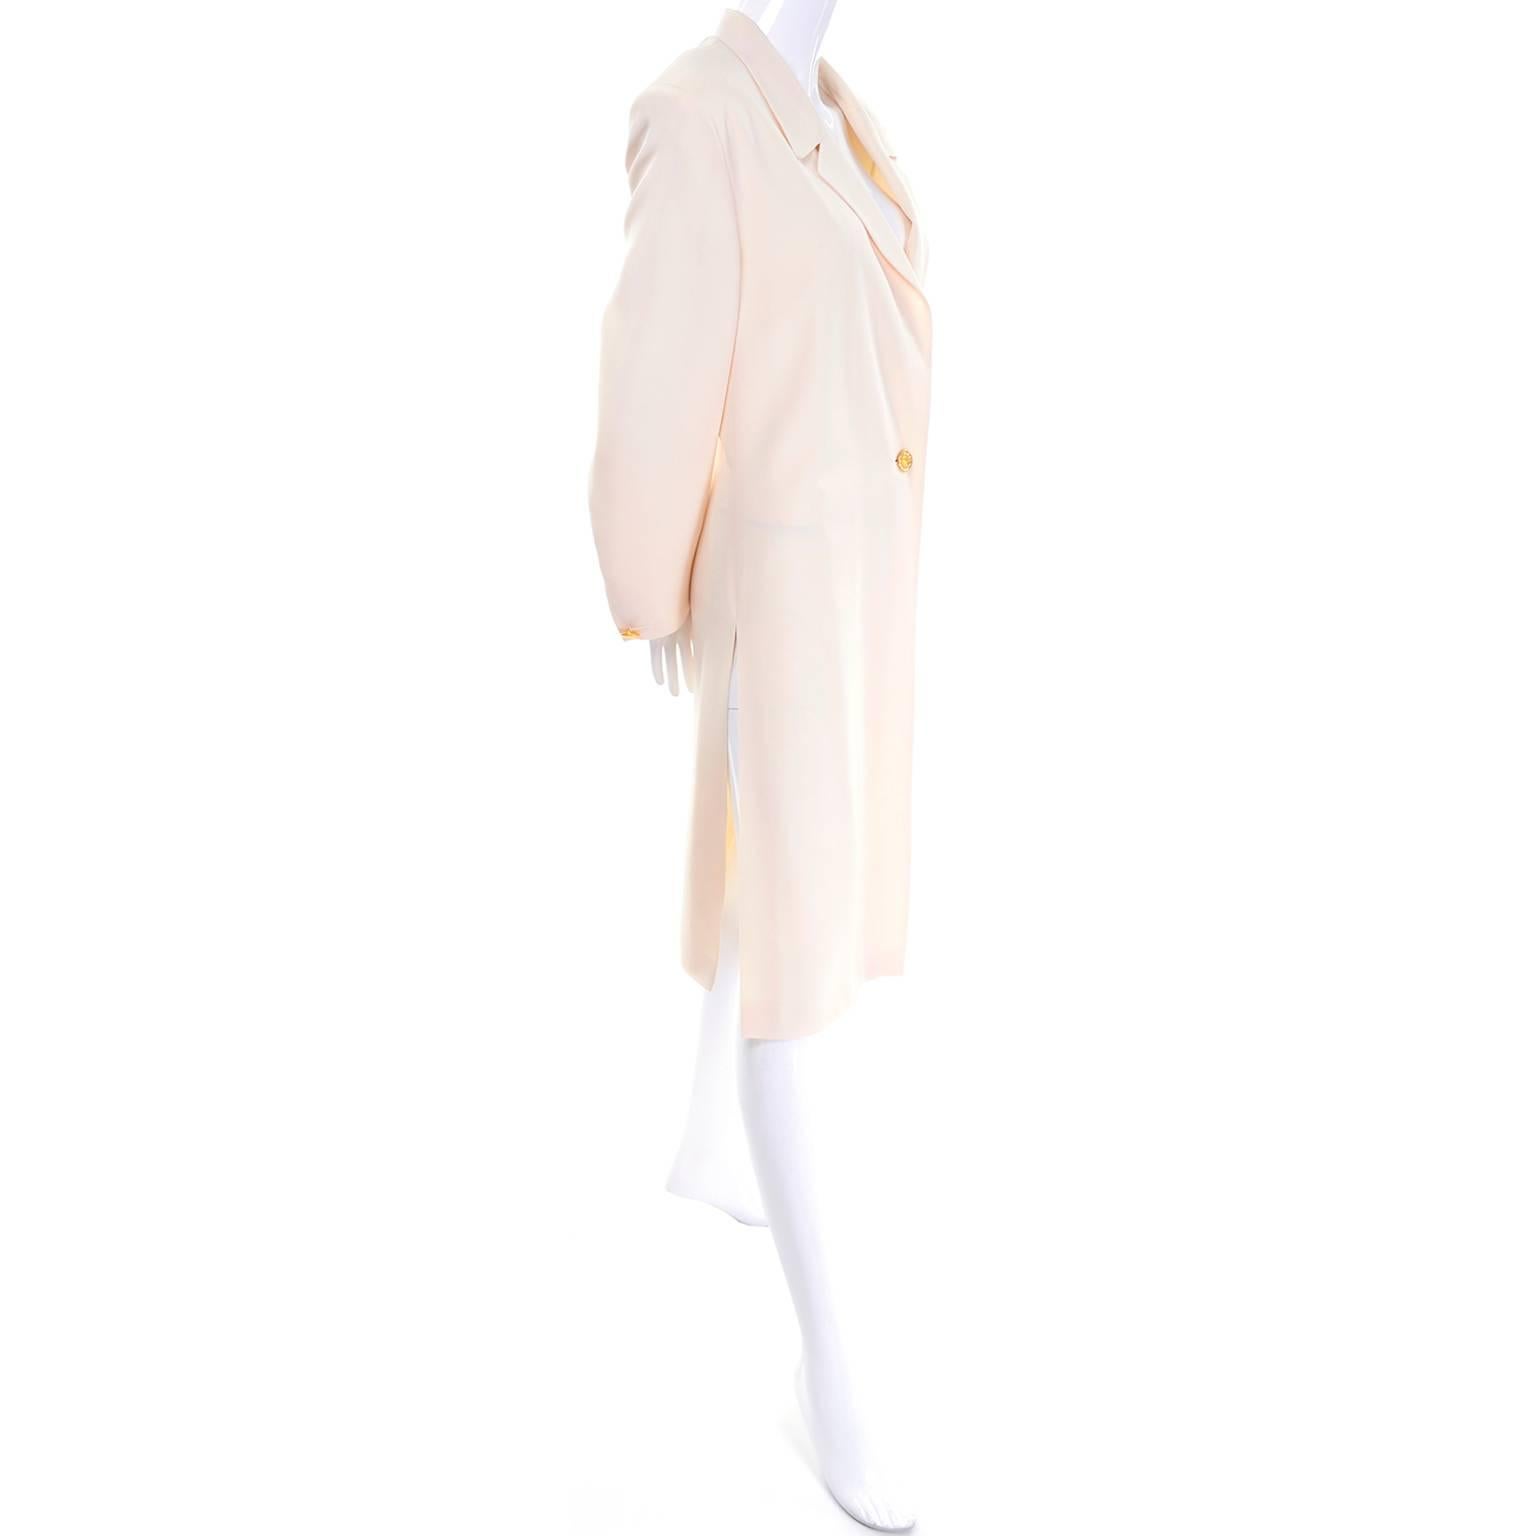 Blanc Manteau de soirée vintage Escada Couture couleur ivoire crème avec boutons or en strass 38 en vente